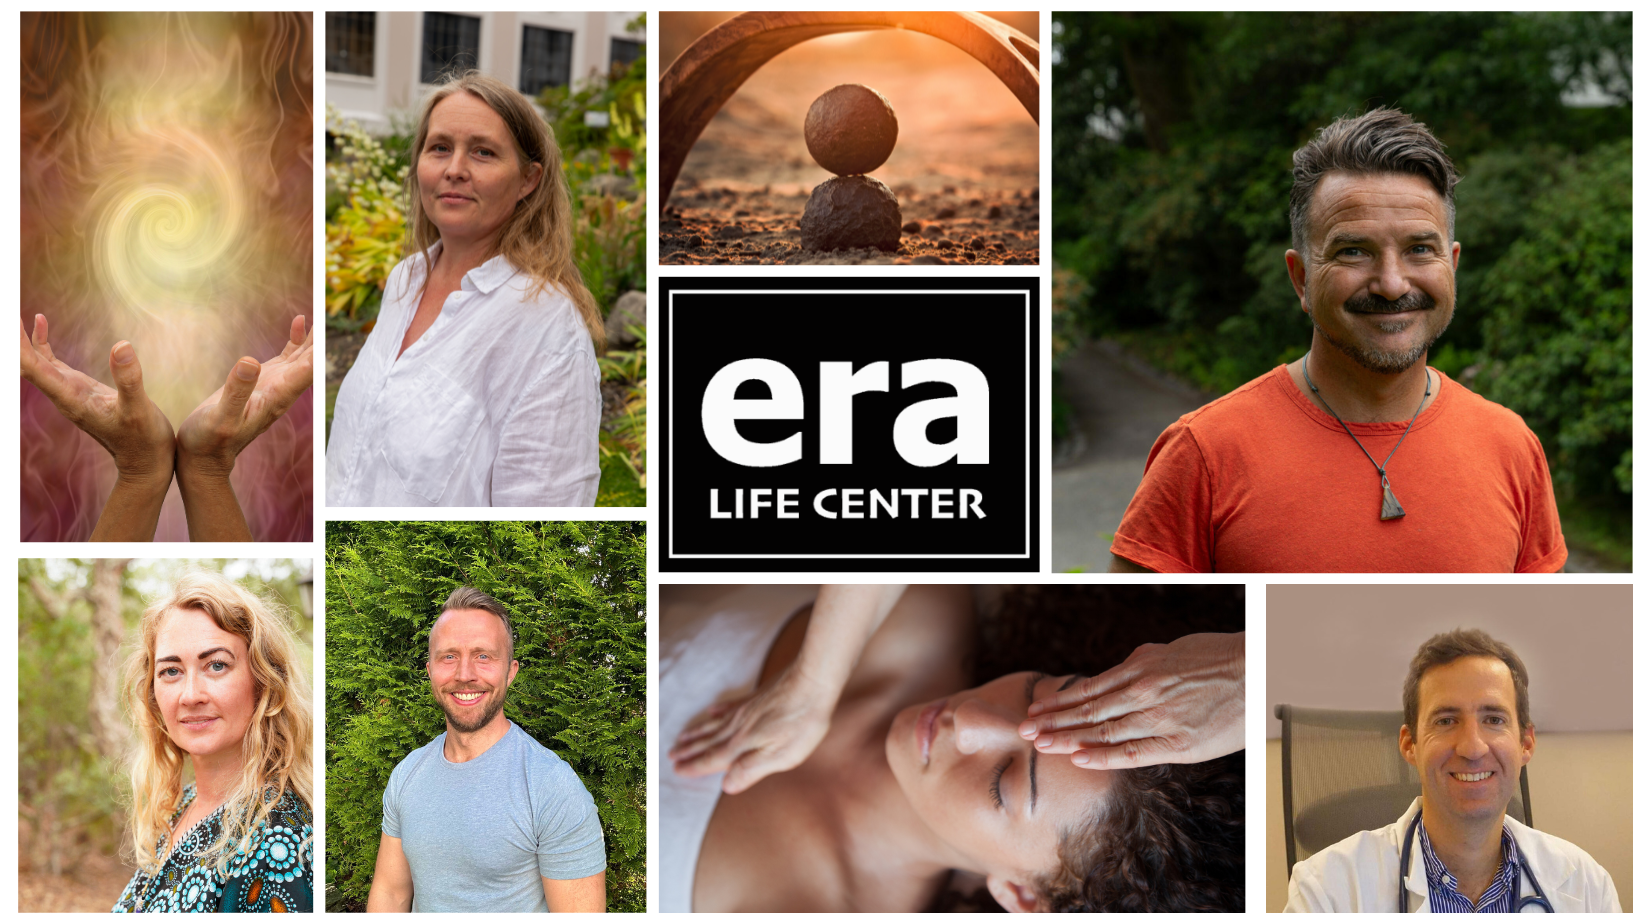 Møt teamet av behandlere, healere og veiledere ved Era Life Center